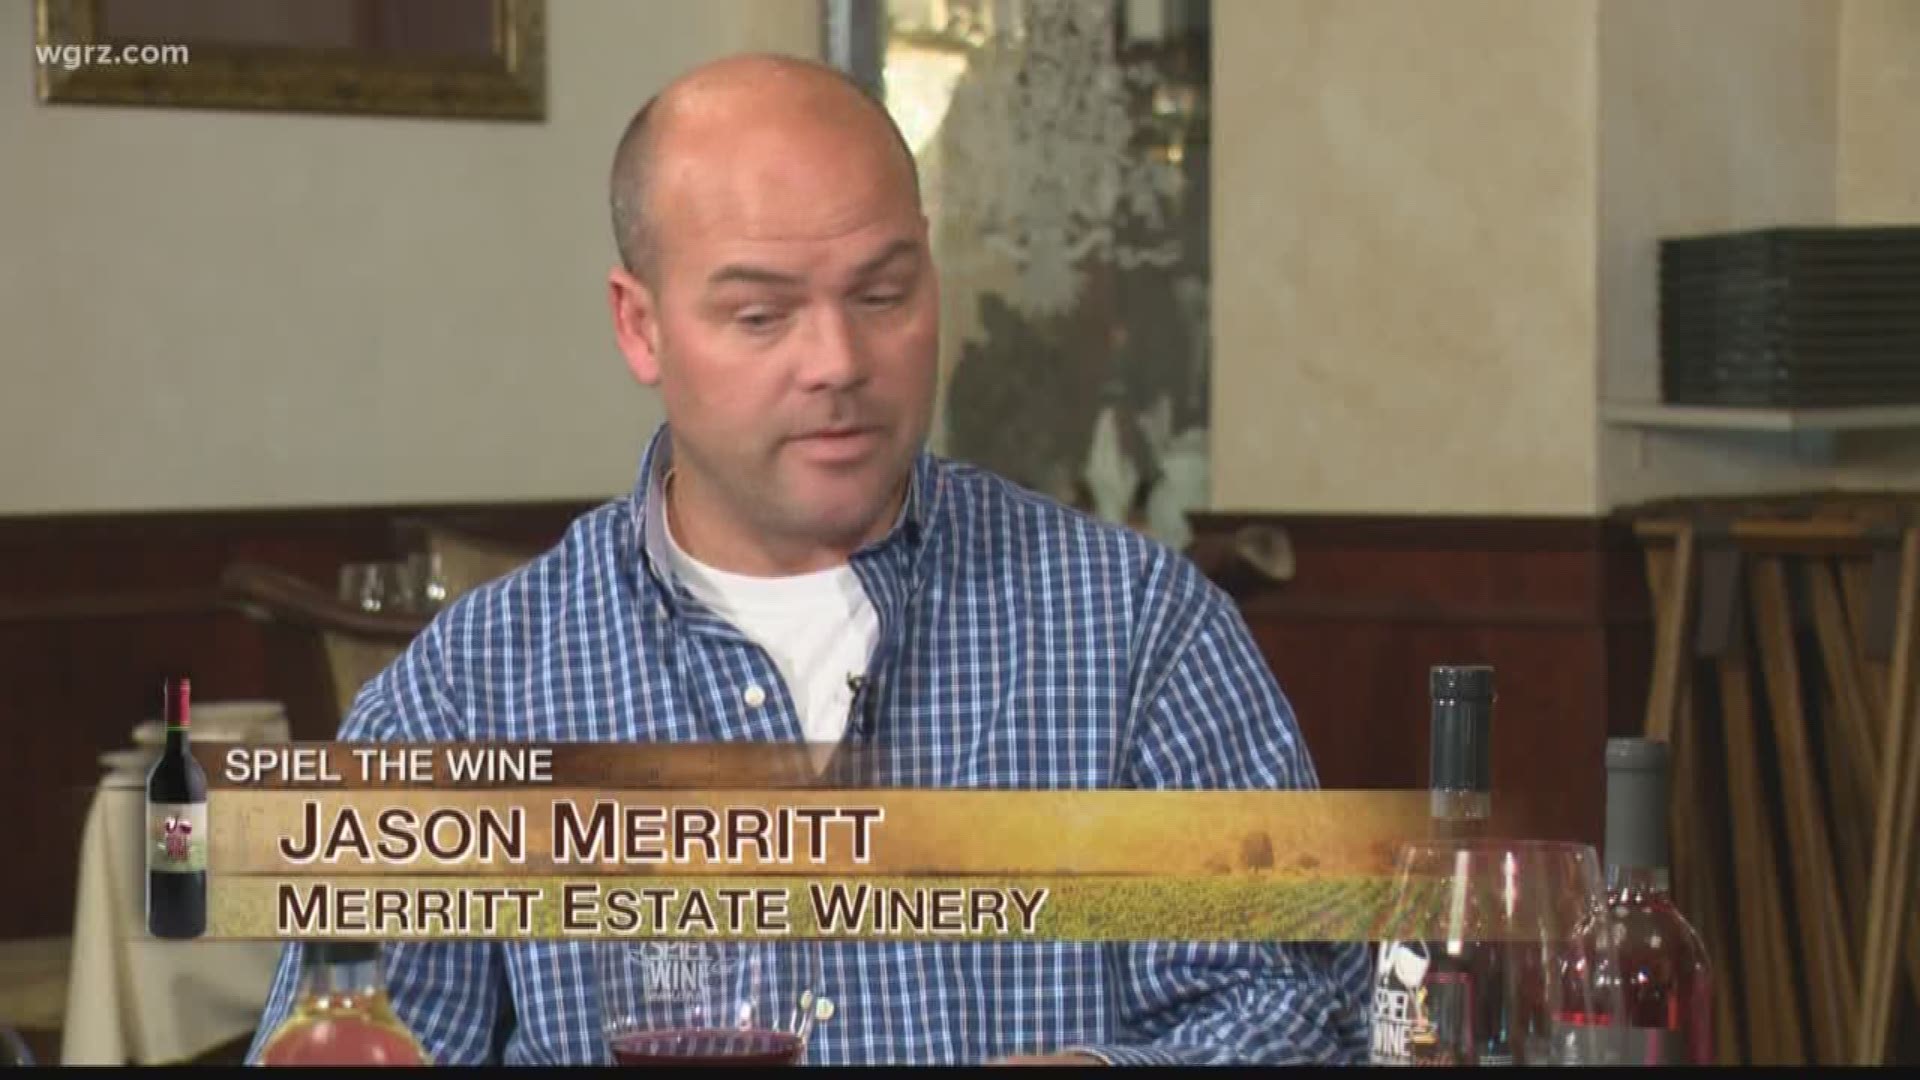 Kevin is joined by Jason Merritt of Merritt Estate Winery